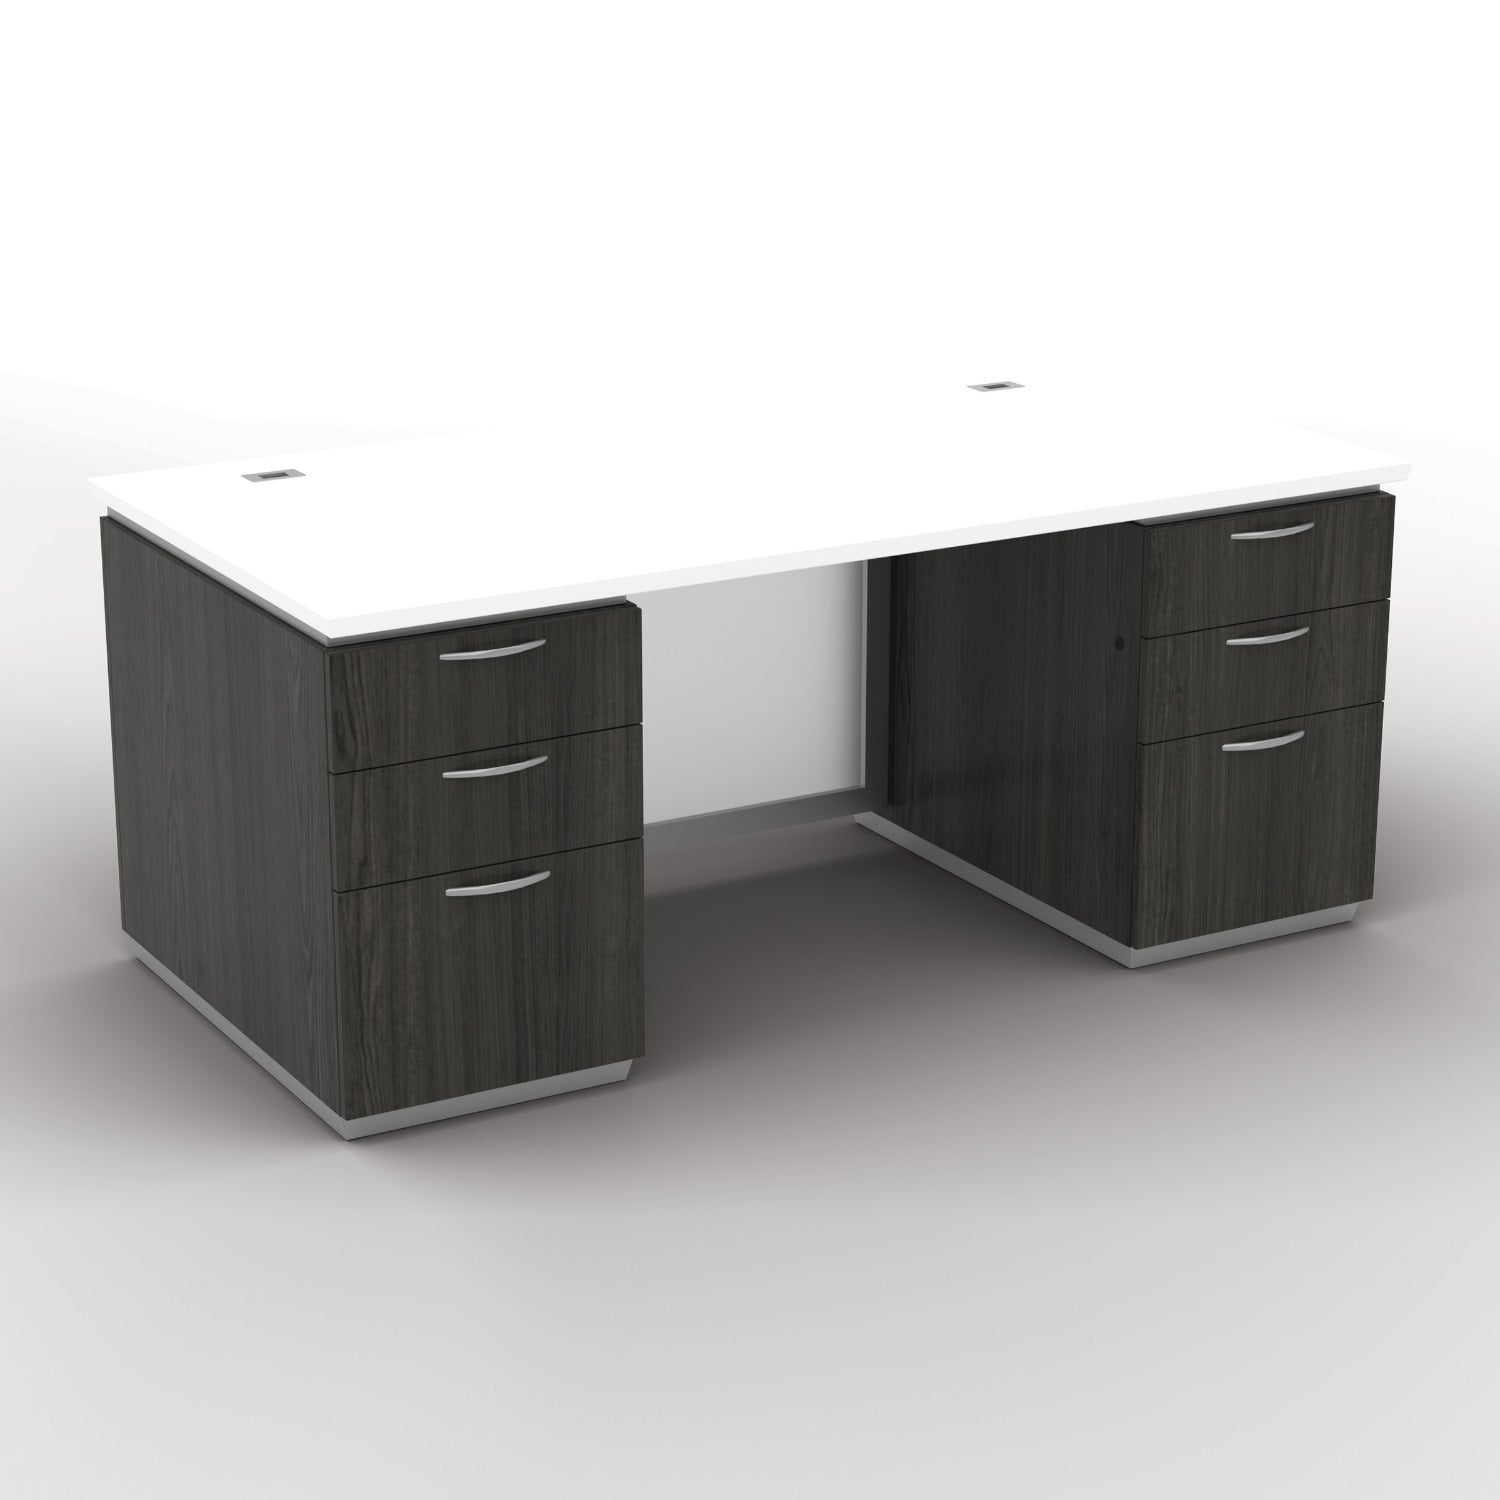 "Tuxedo White" Double Pedestal Desk, 72" x 36", White Top with Slate Grey Base